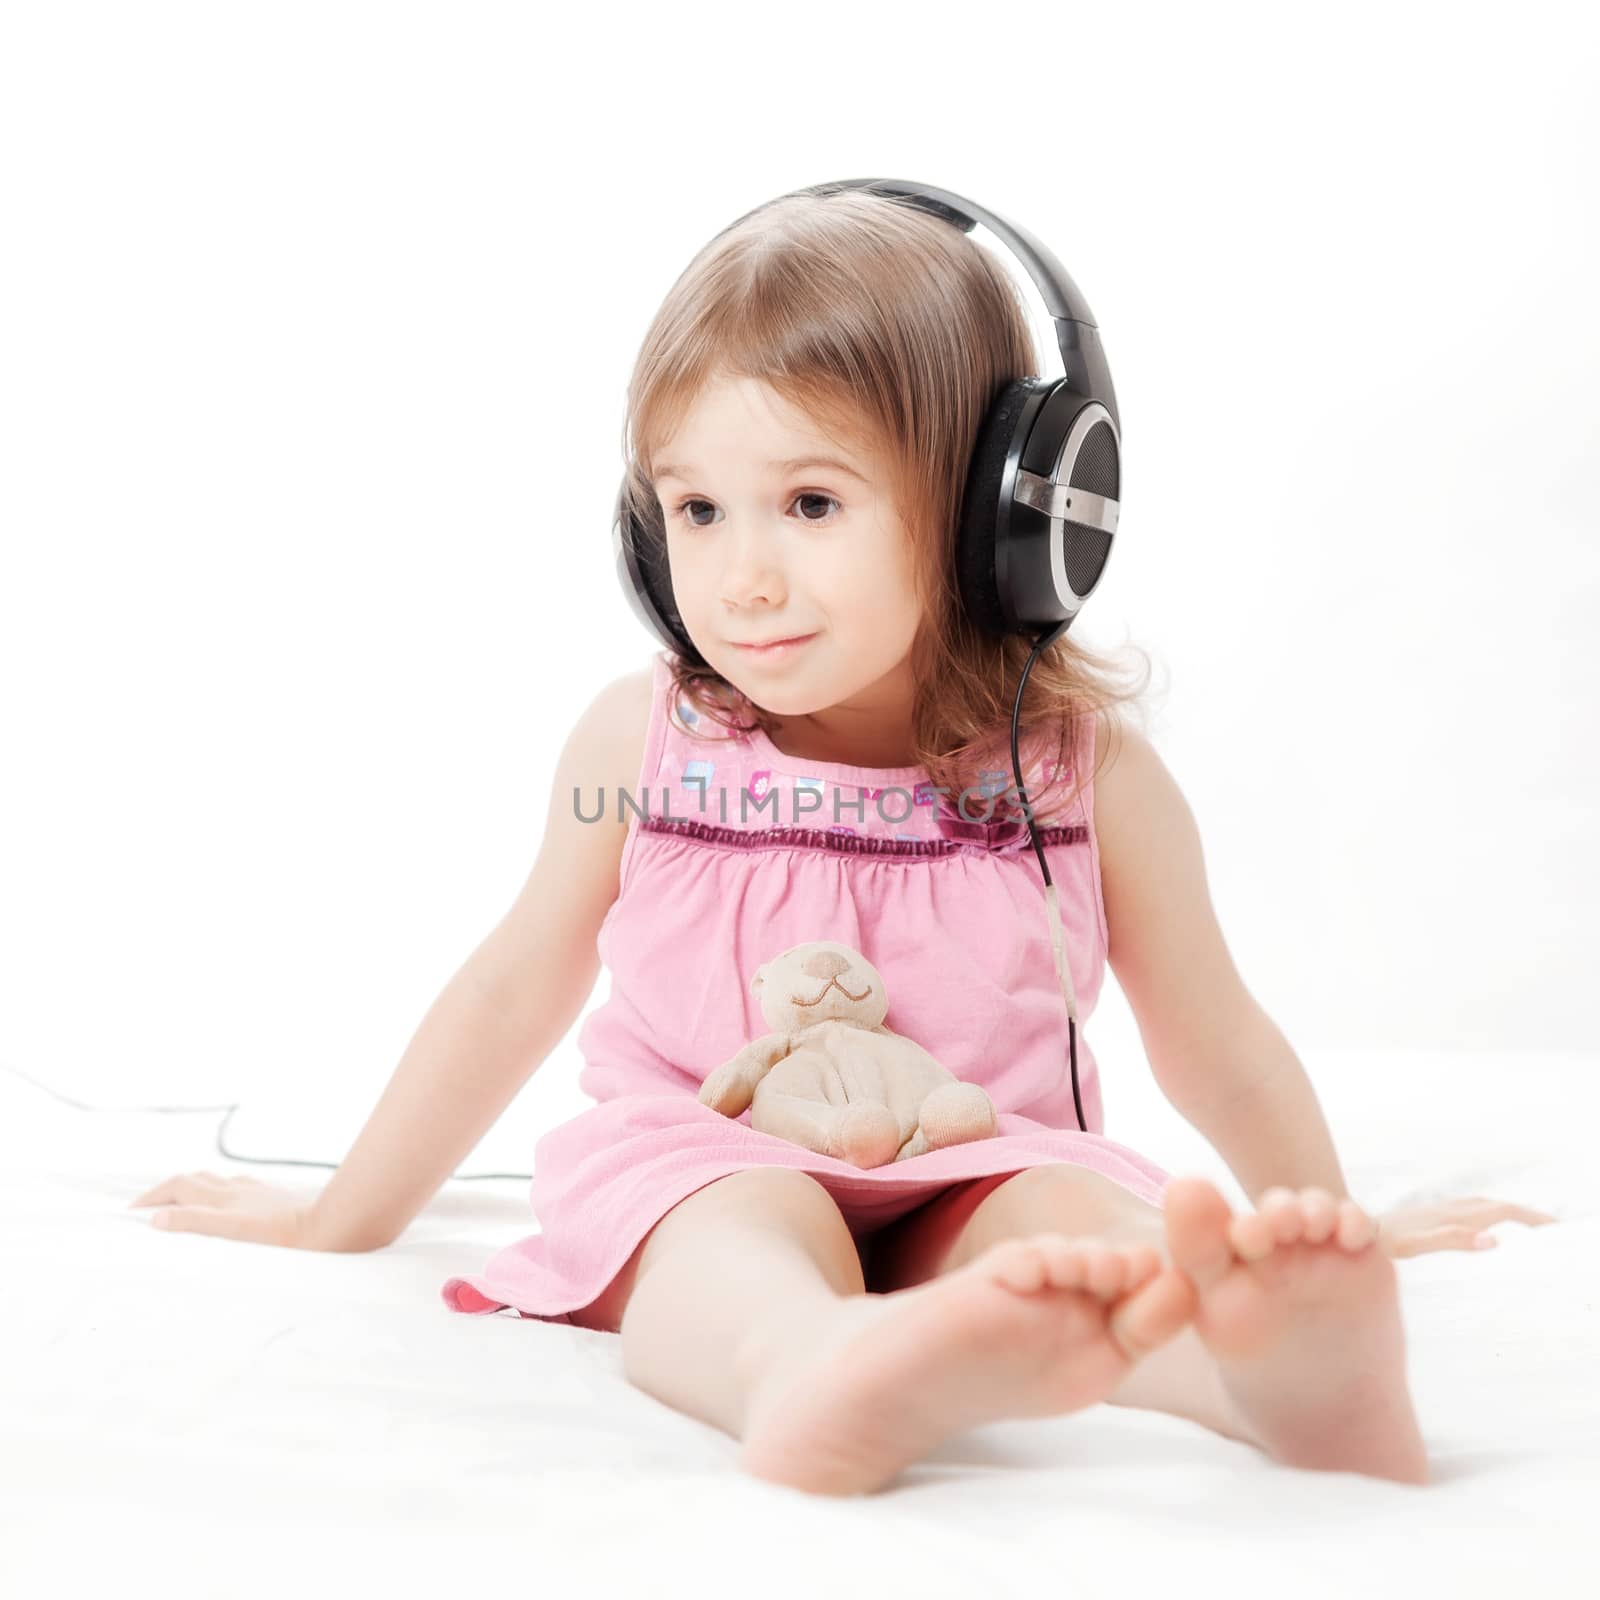 the little girl listens to music in earphones